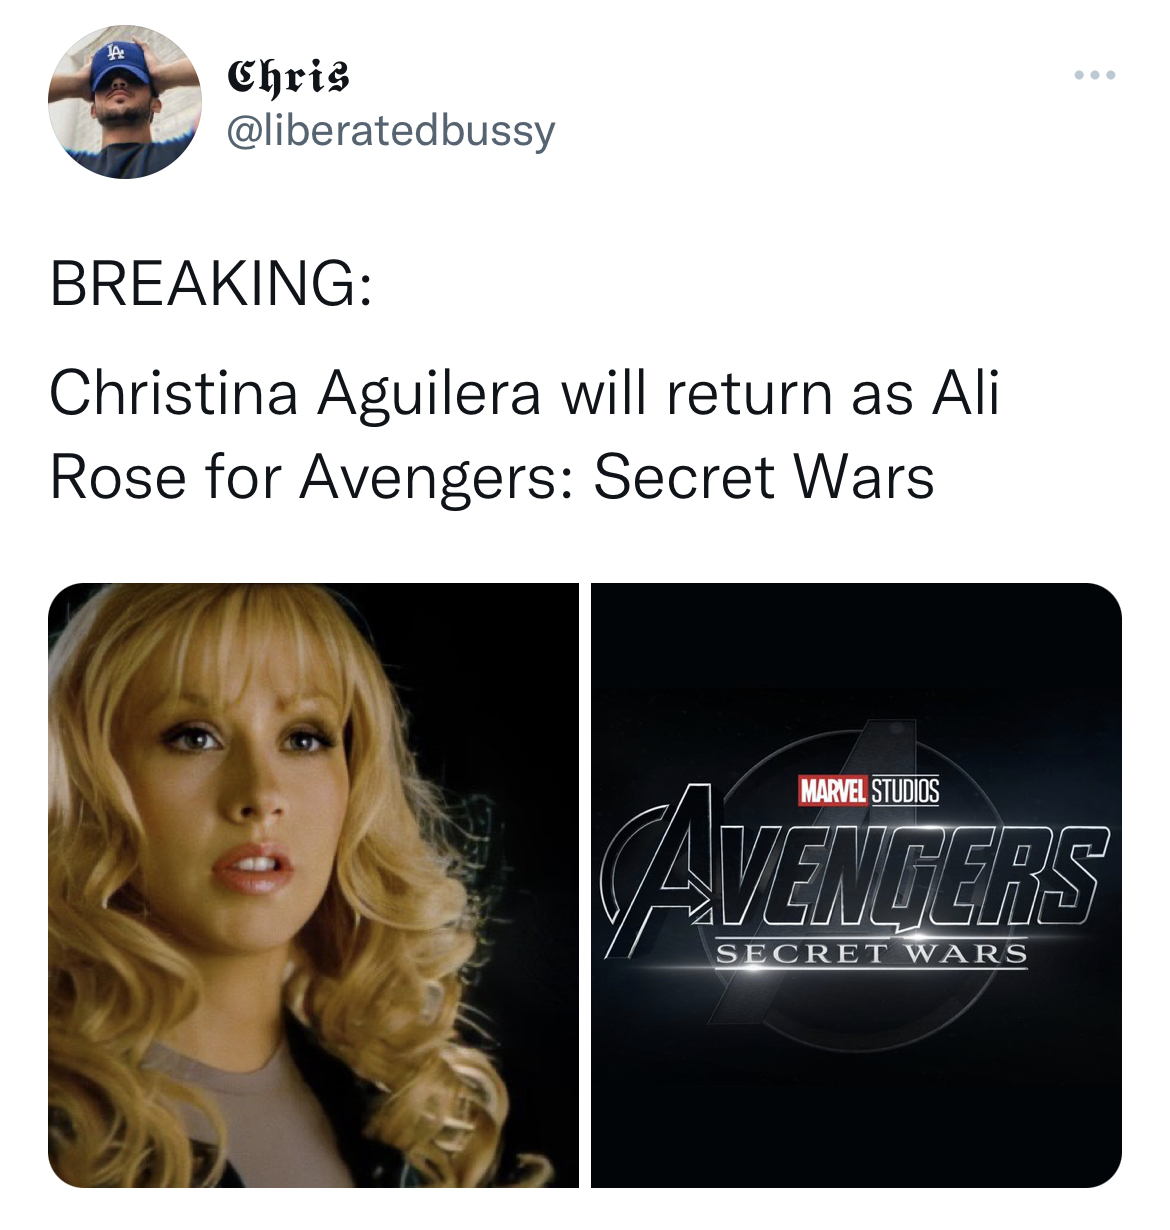 Tweets dunking on celebs - hair coloring - Chris Breaking Christina Aguilera will return as Ali Rose for Avengers Secret Wars Marvel Studios Avengers Secret Wars